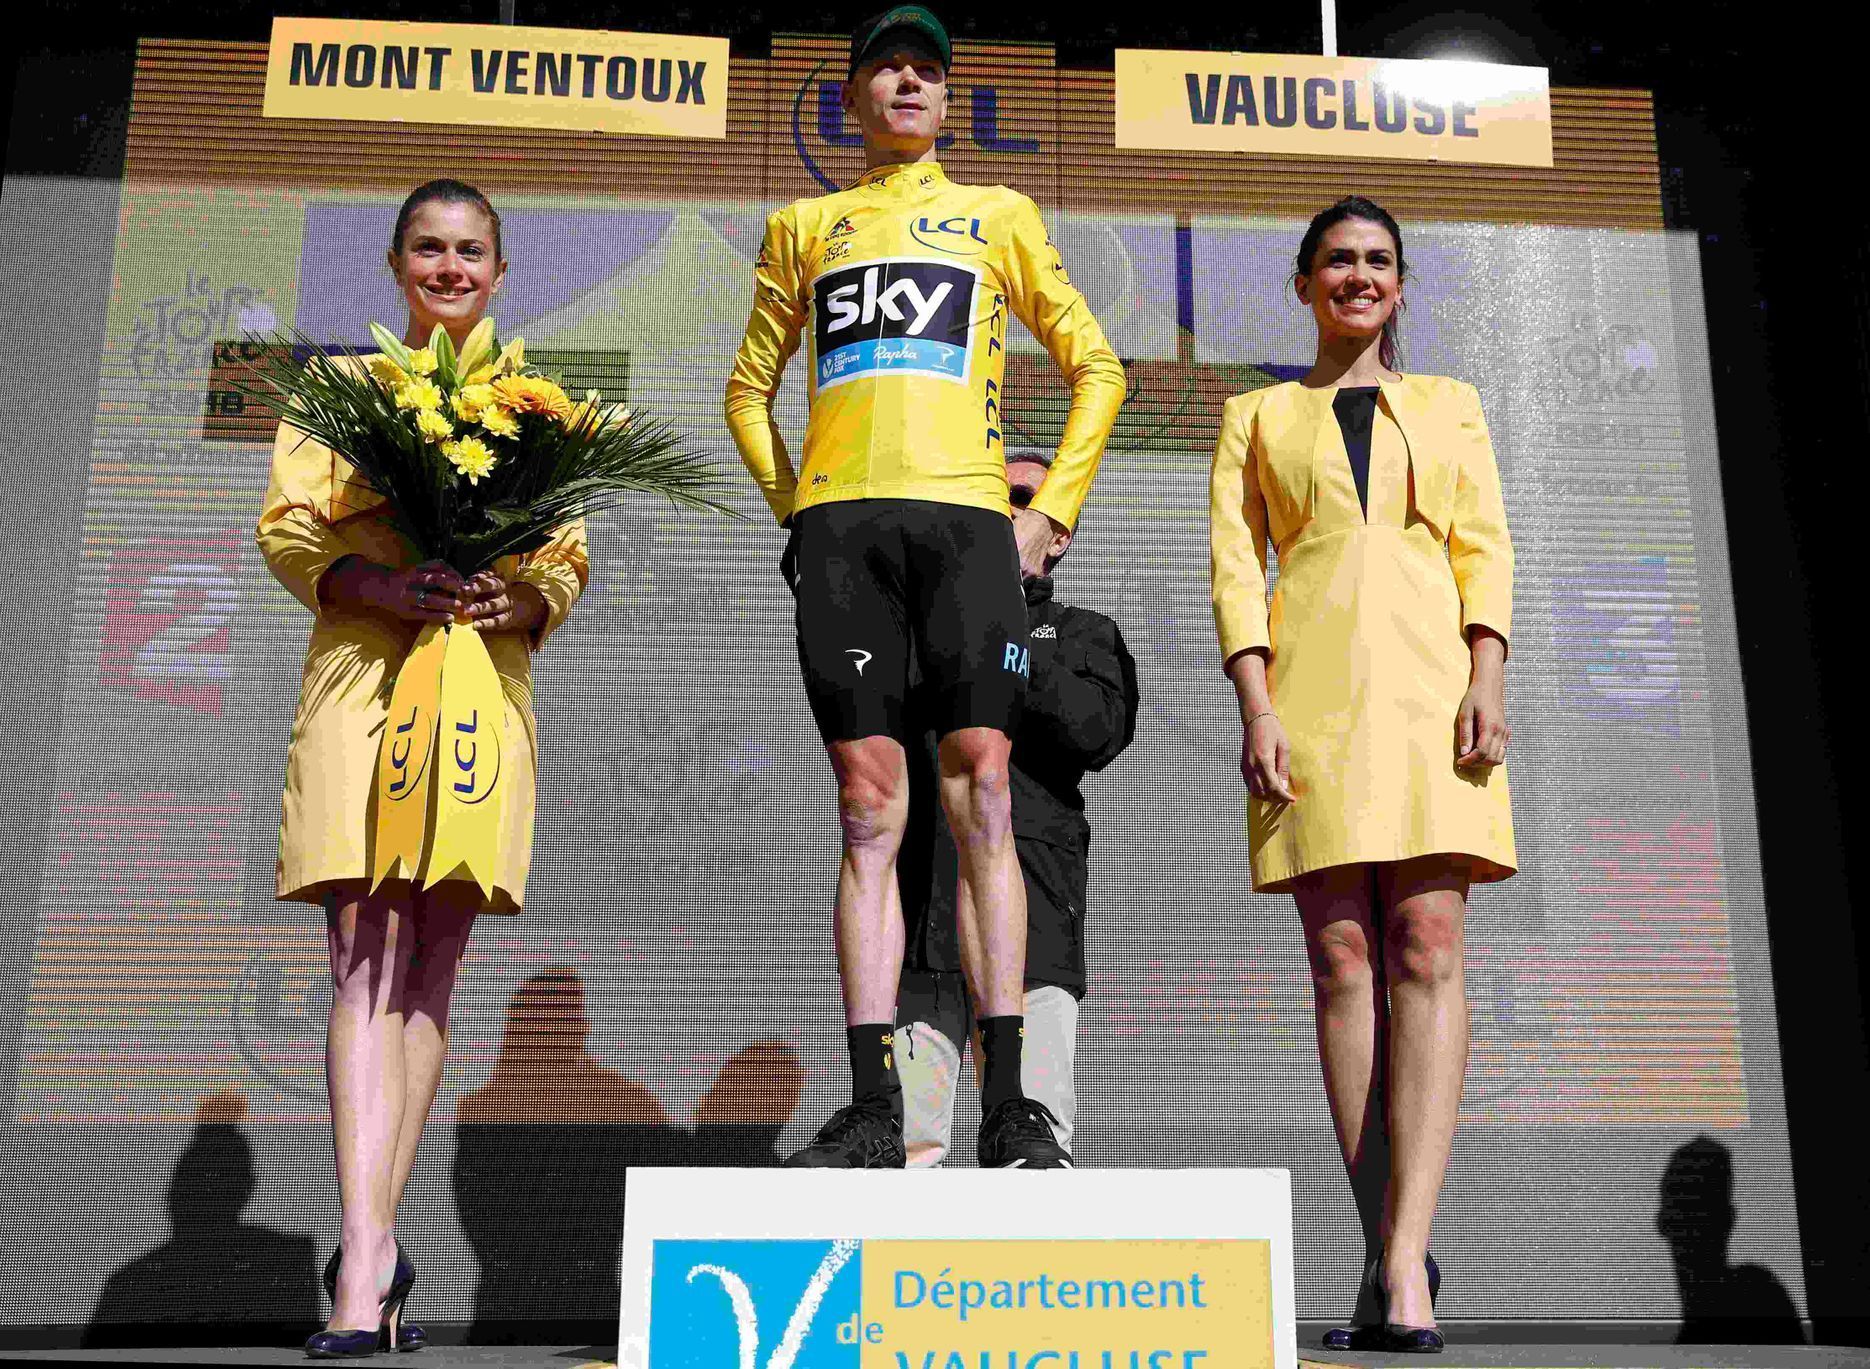 Tour de France 2016, 12. etapa: Chrise Froome